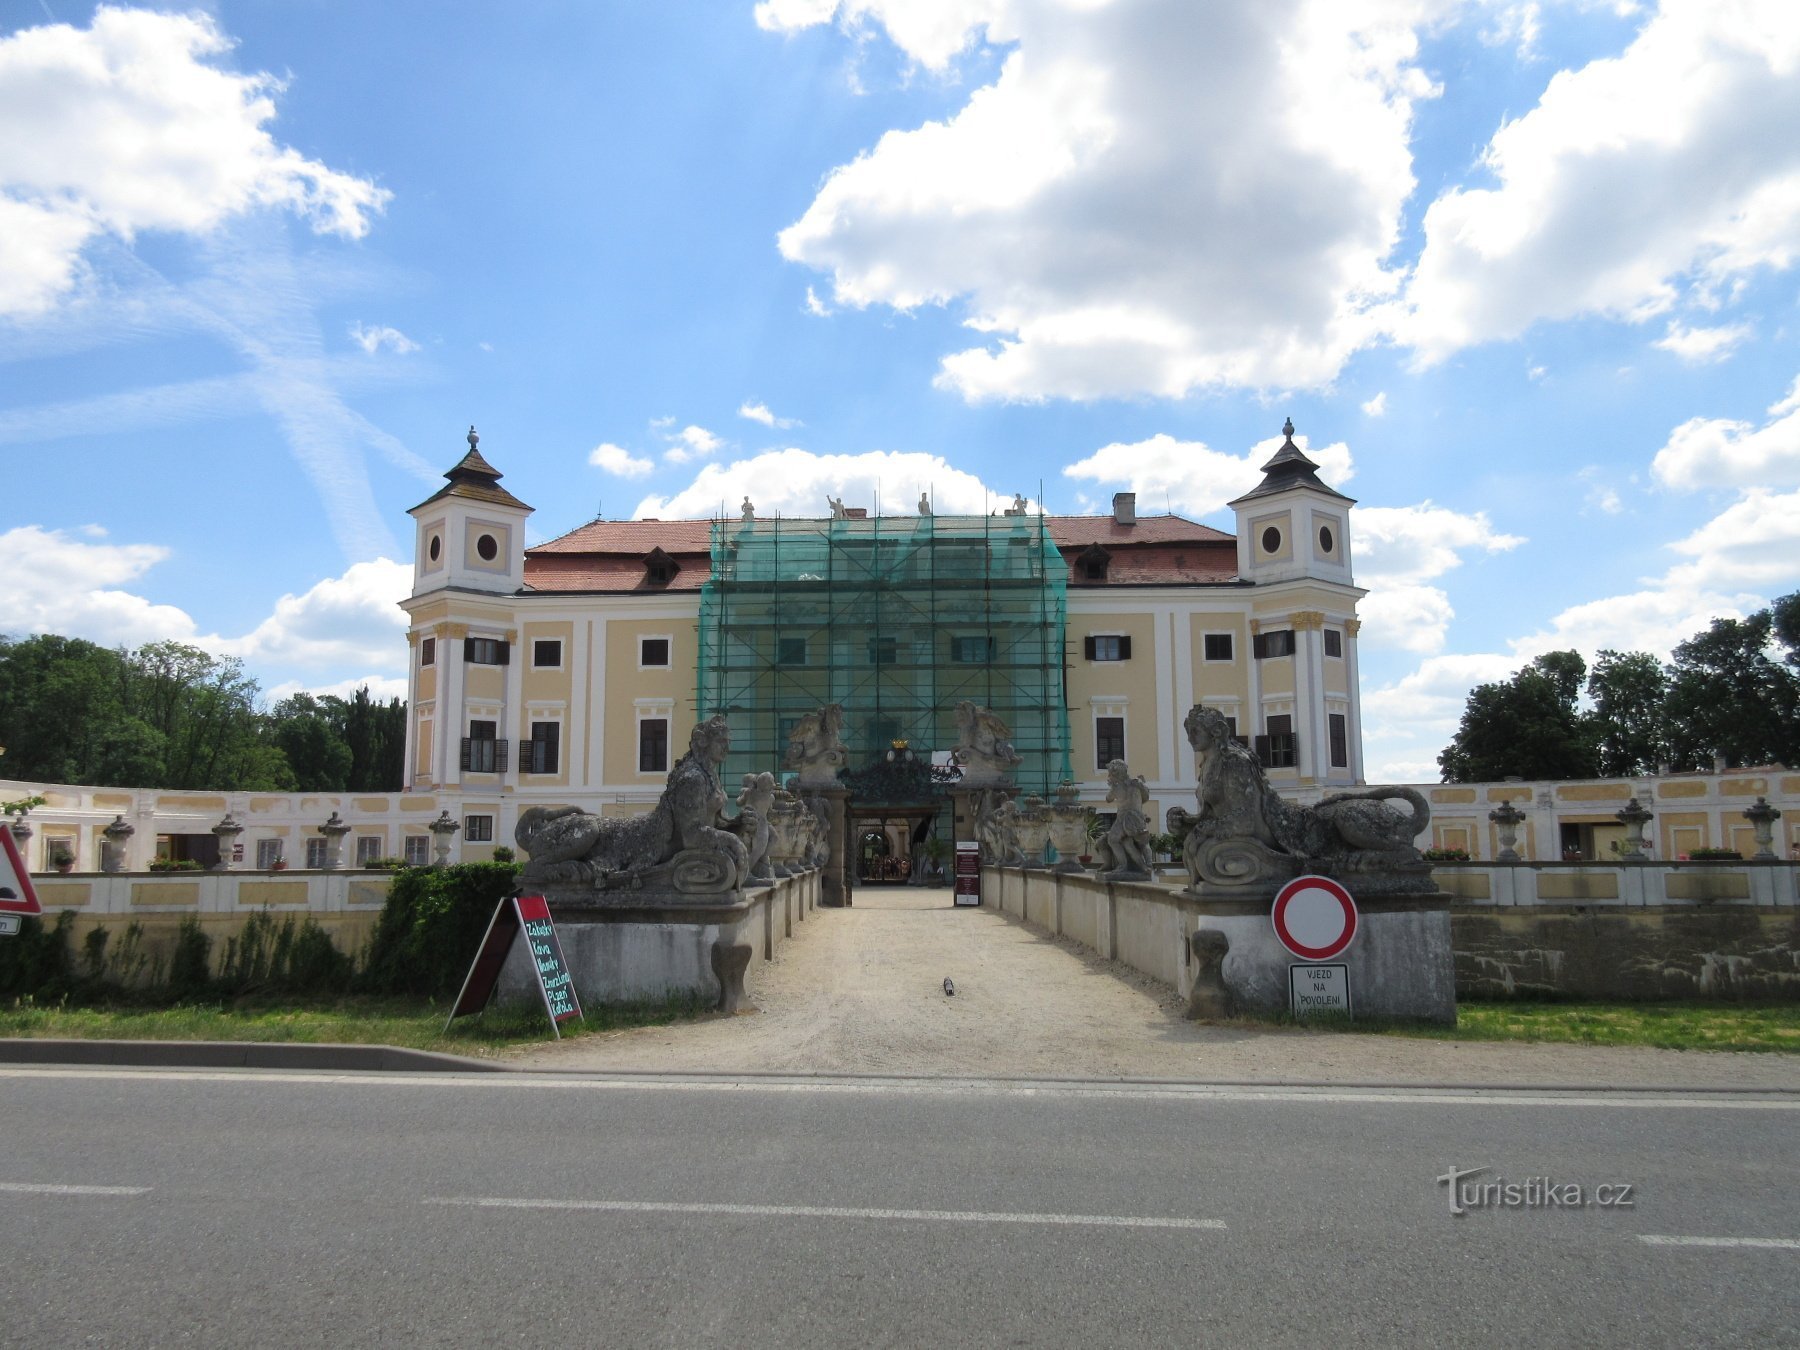 Milotice - castelo do estado e sua história